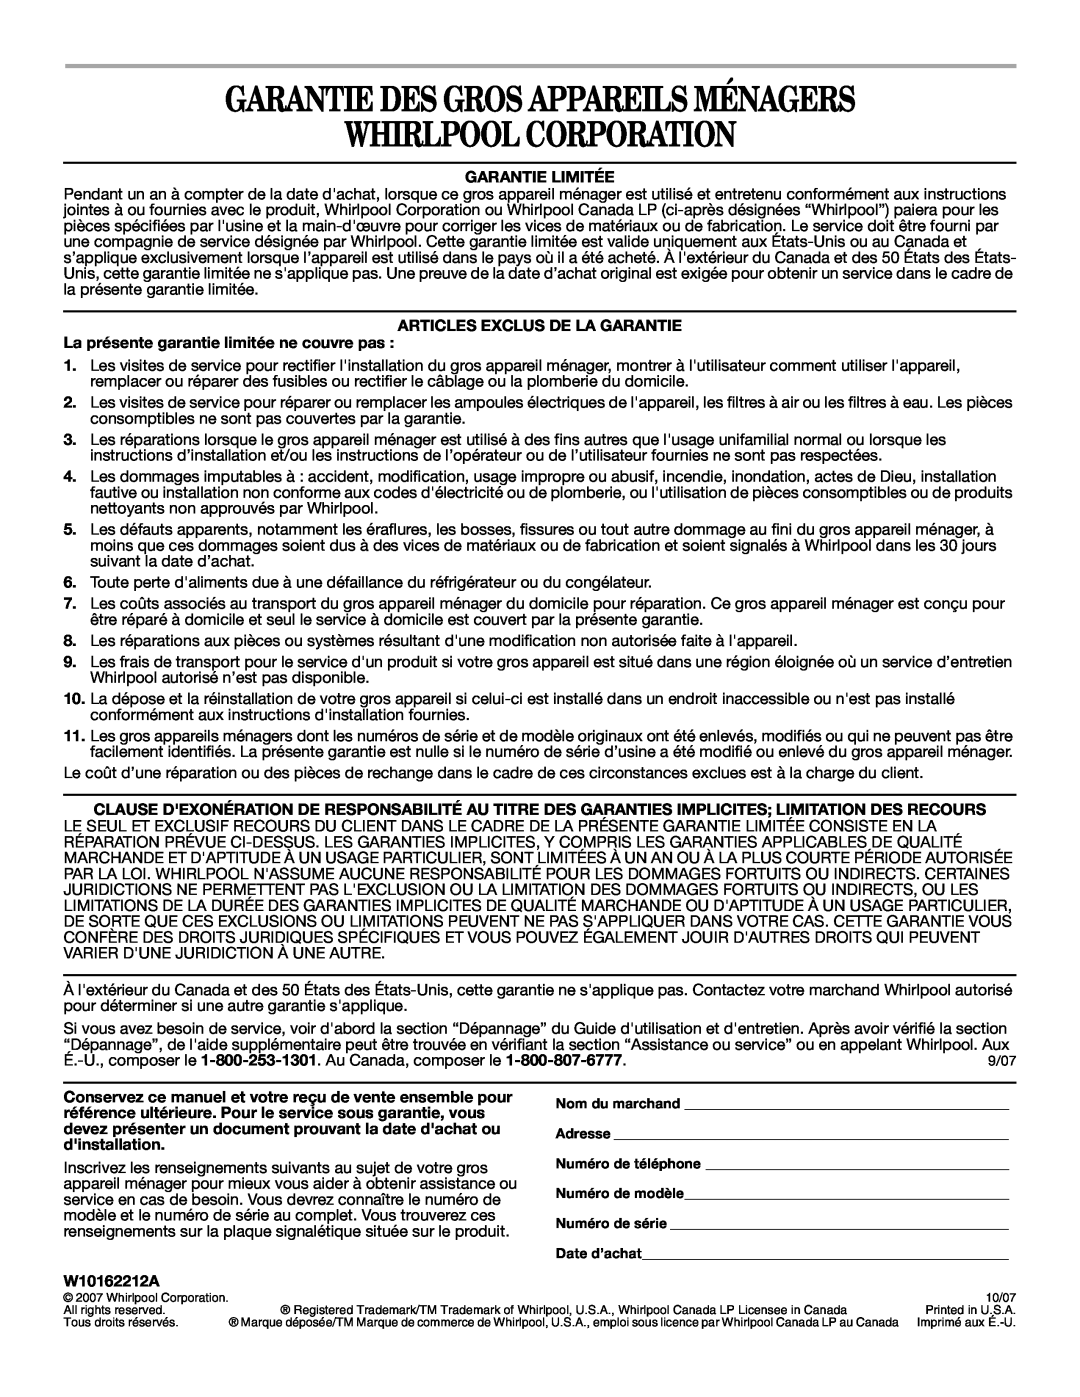 Whirlpool W10162212A manual Garantie Des Gros Appareils Ménagers Whirlpool Corporation, Garantie Limitée 